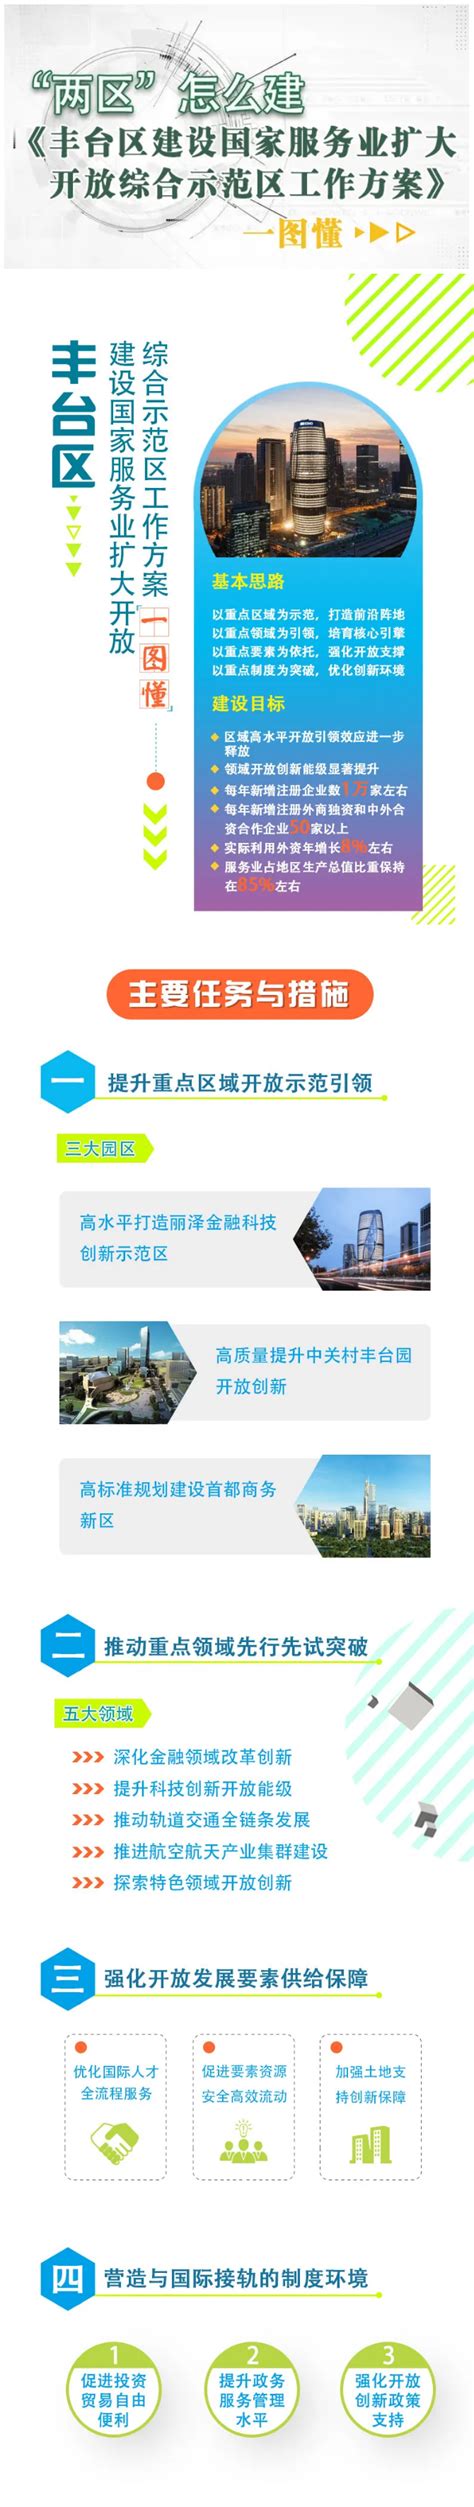 丰台区城乡一体化周庄子村旧村改造项目（二期）-北京泰福恒投资发展有限公司